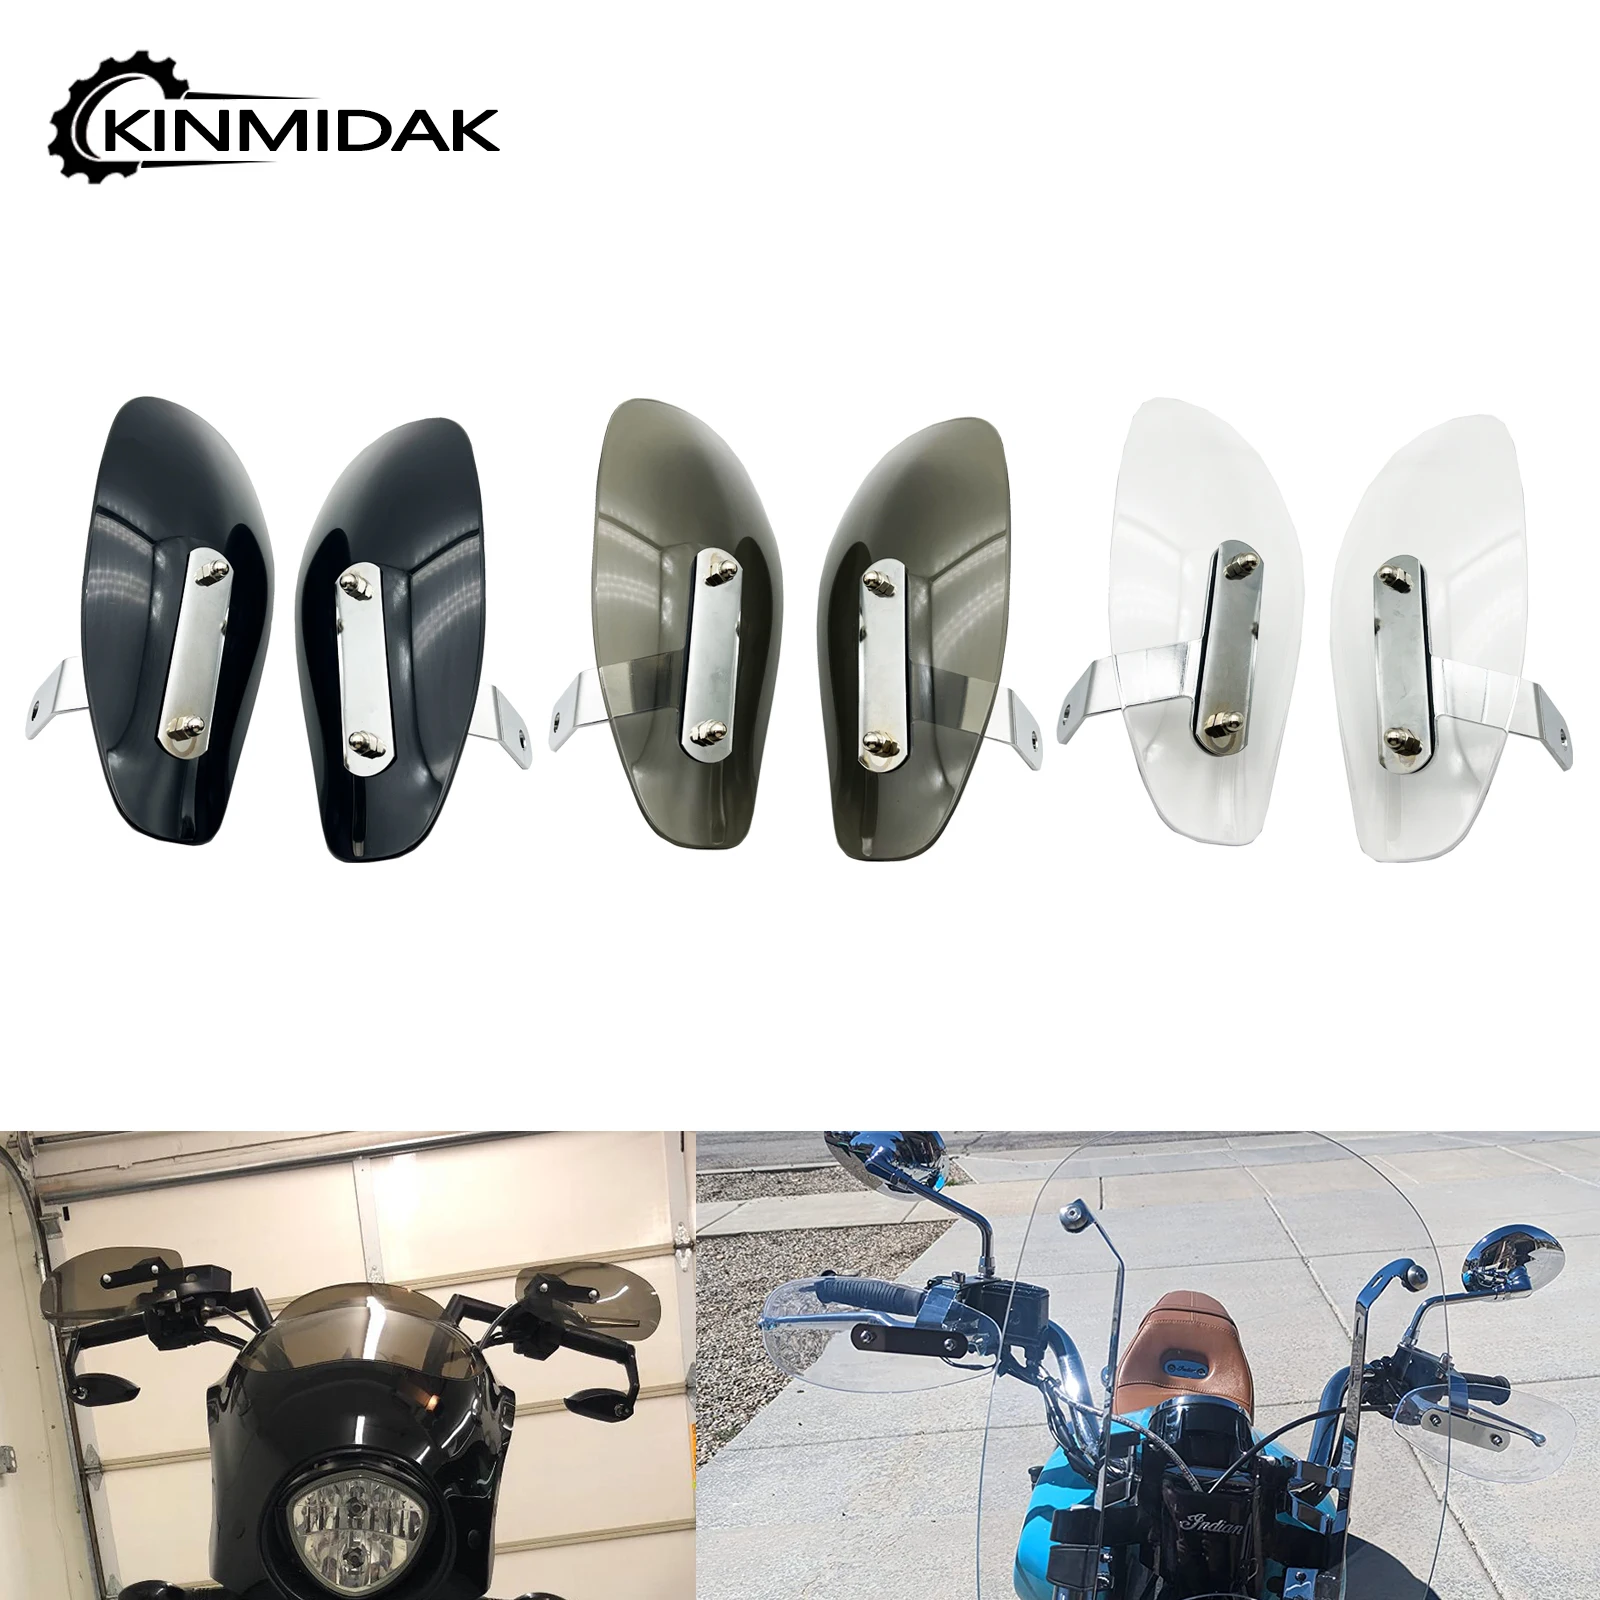 

Универсальная защита от ветра и холода для мотоцикла, дефлекторы на лобовое стекло для Harley Touring Softail Sportster XL Chopper Cruiser